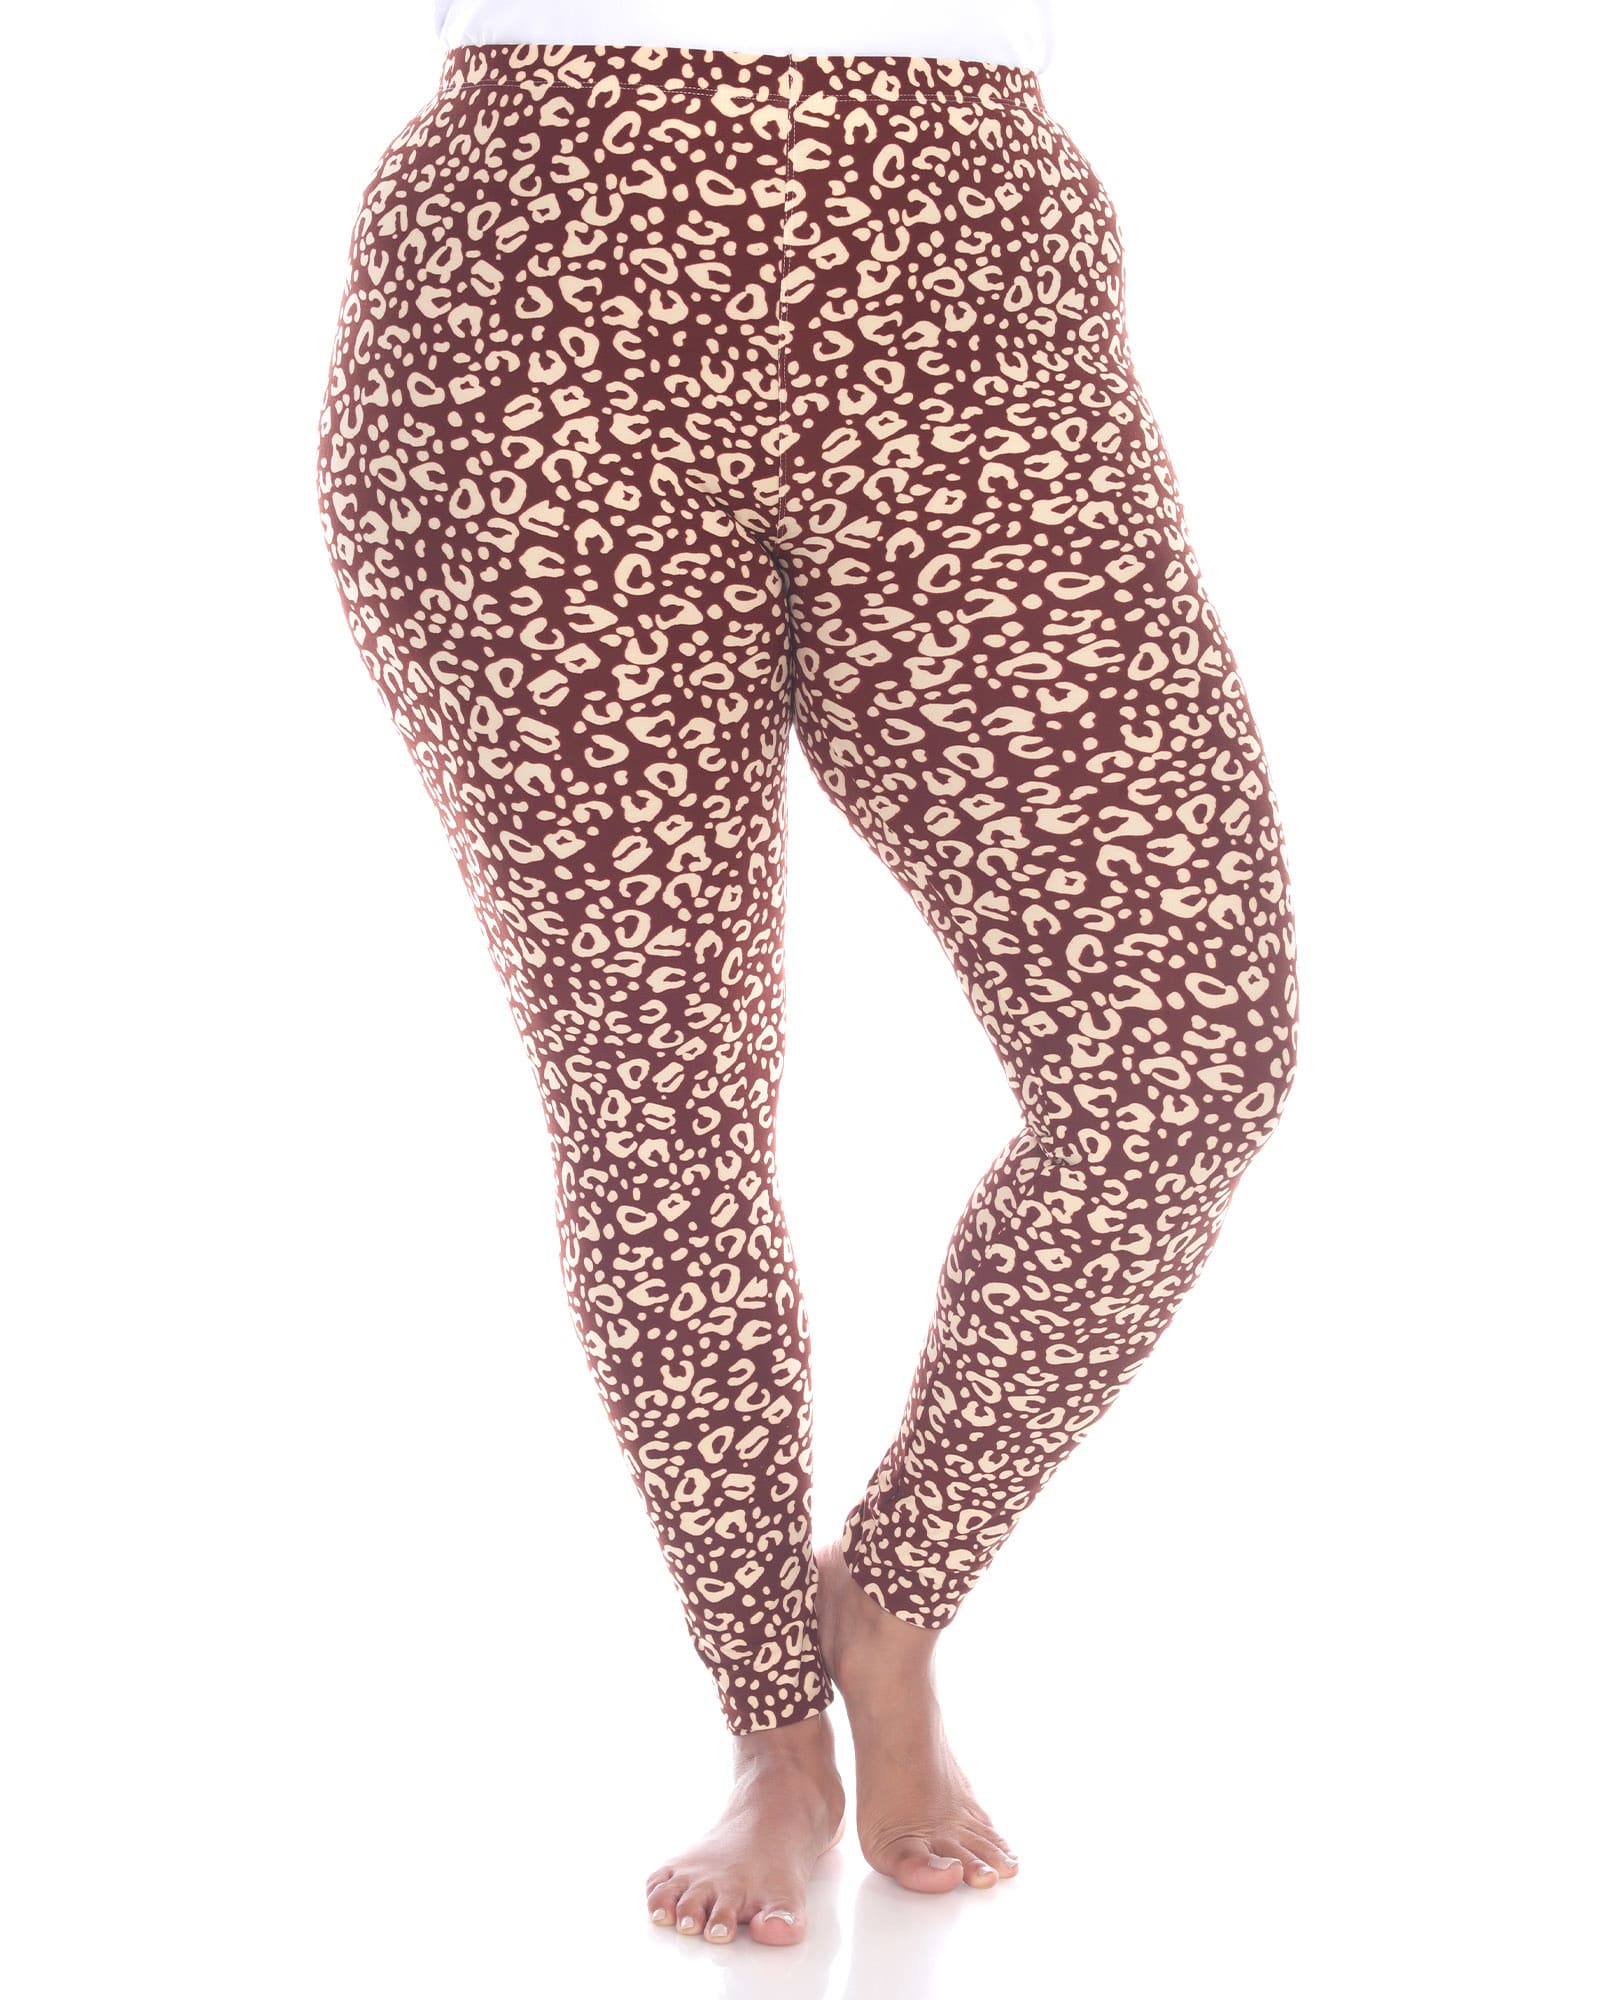 Super Soft Leopard Printed Leggings | Brown Cheetah